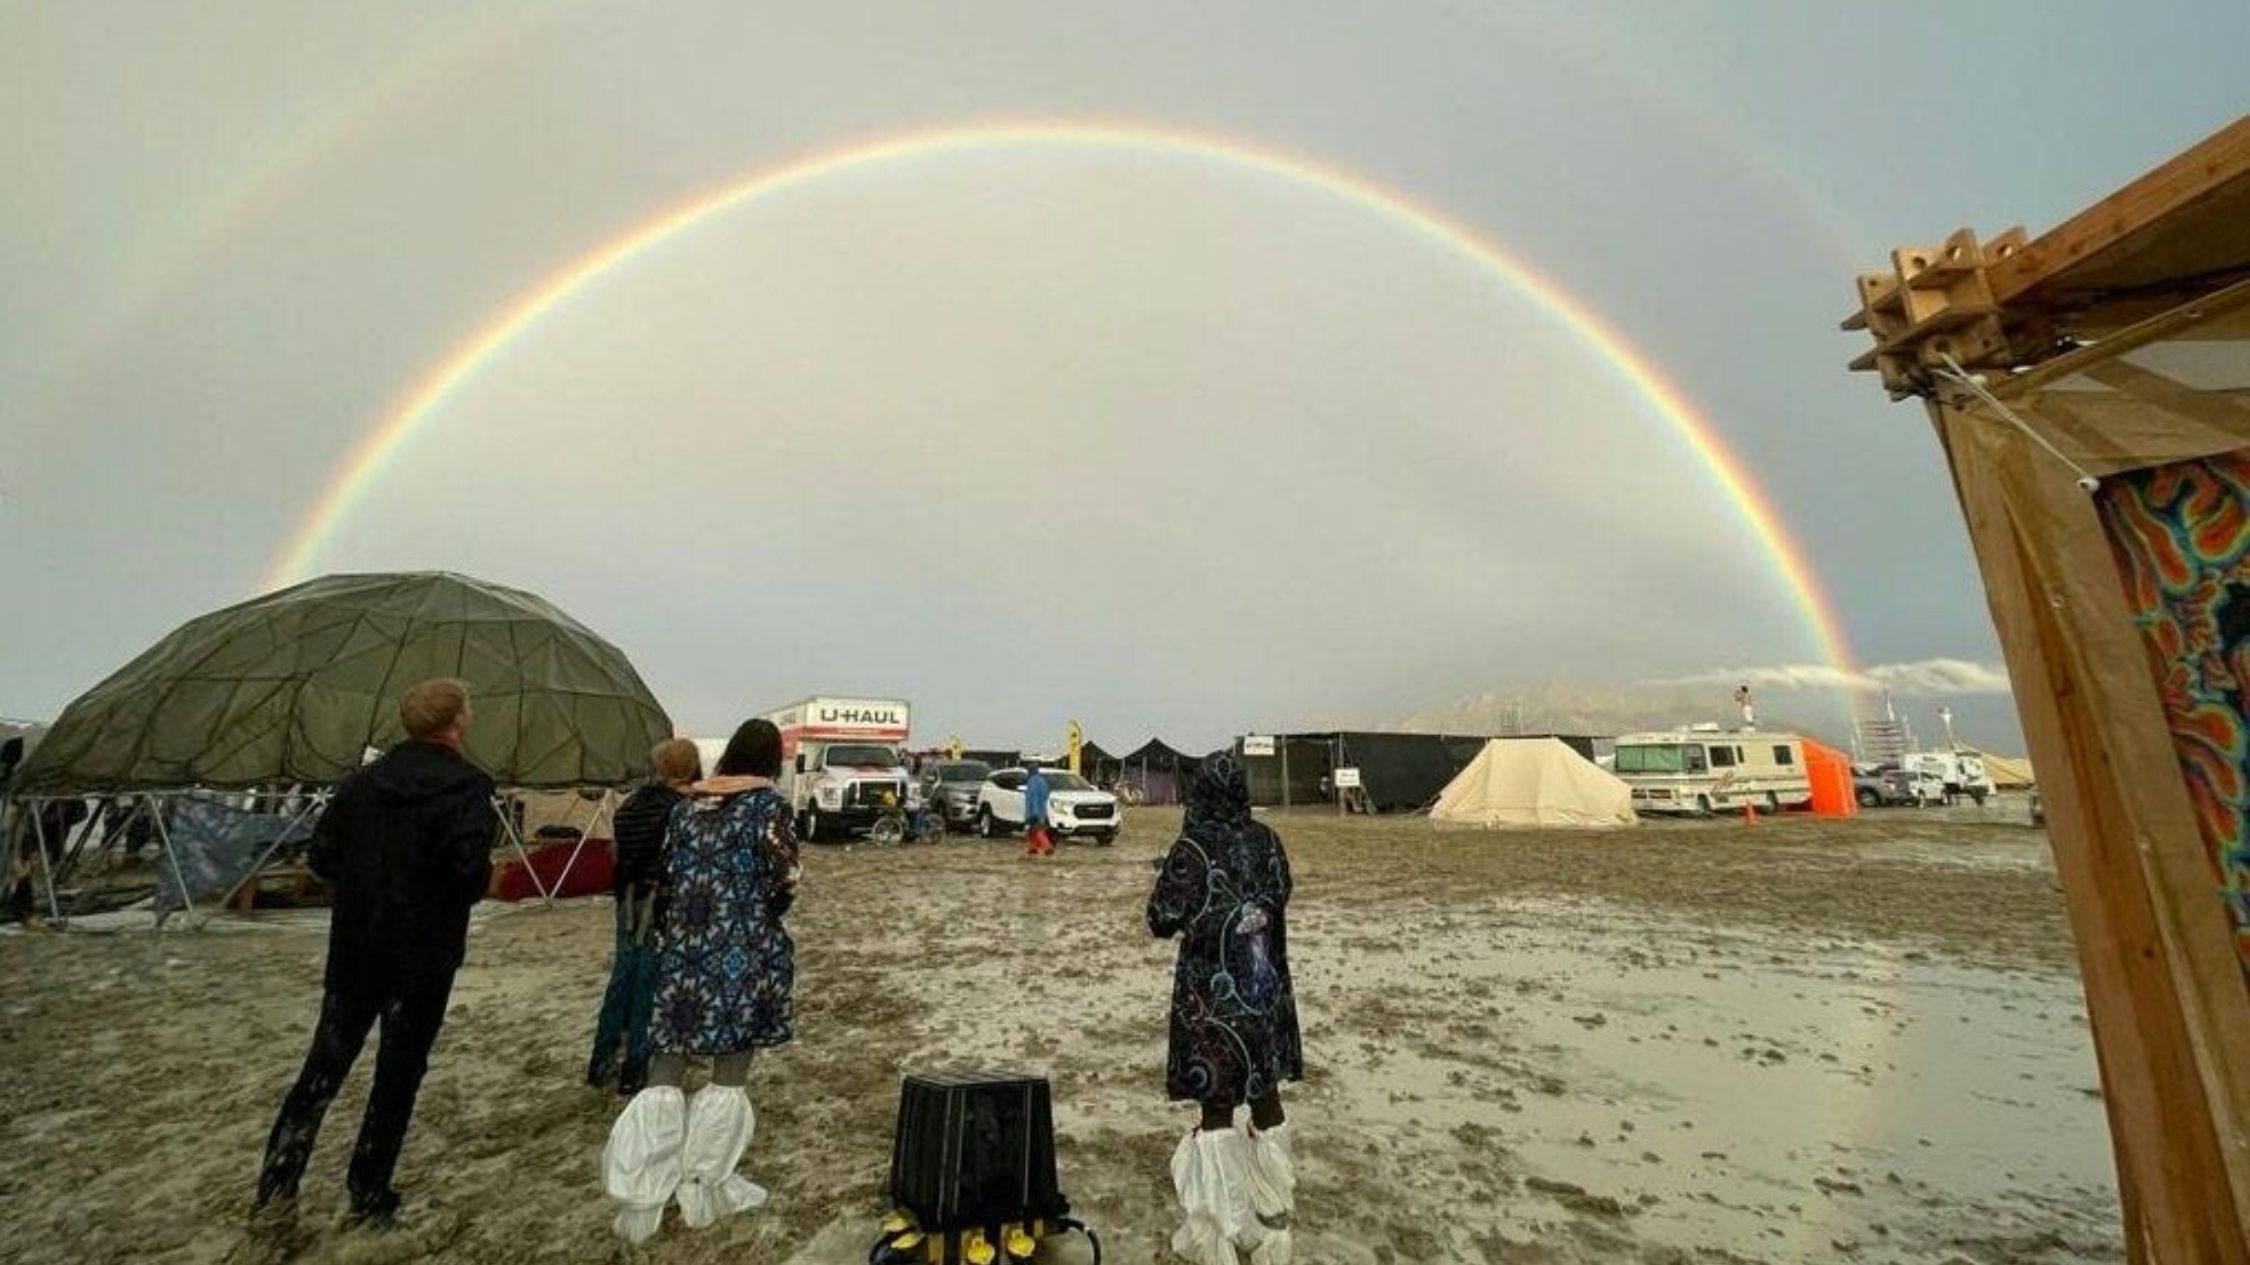 Investigasi kematian di festival Burning Man setelah hujan lebat di gurun Nevada